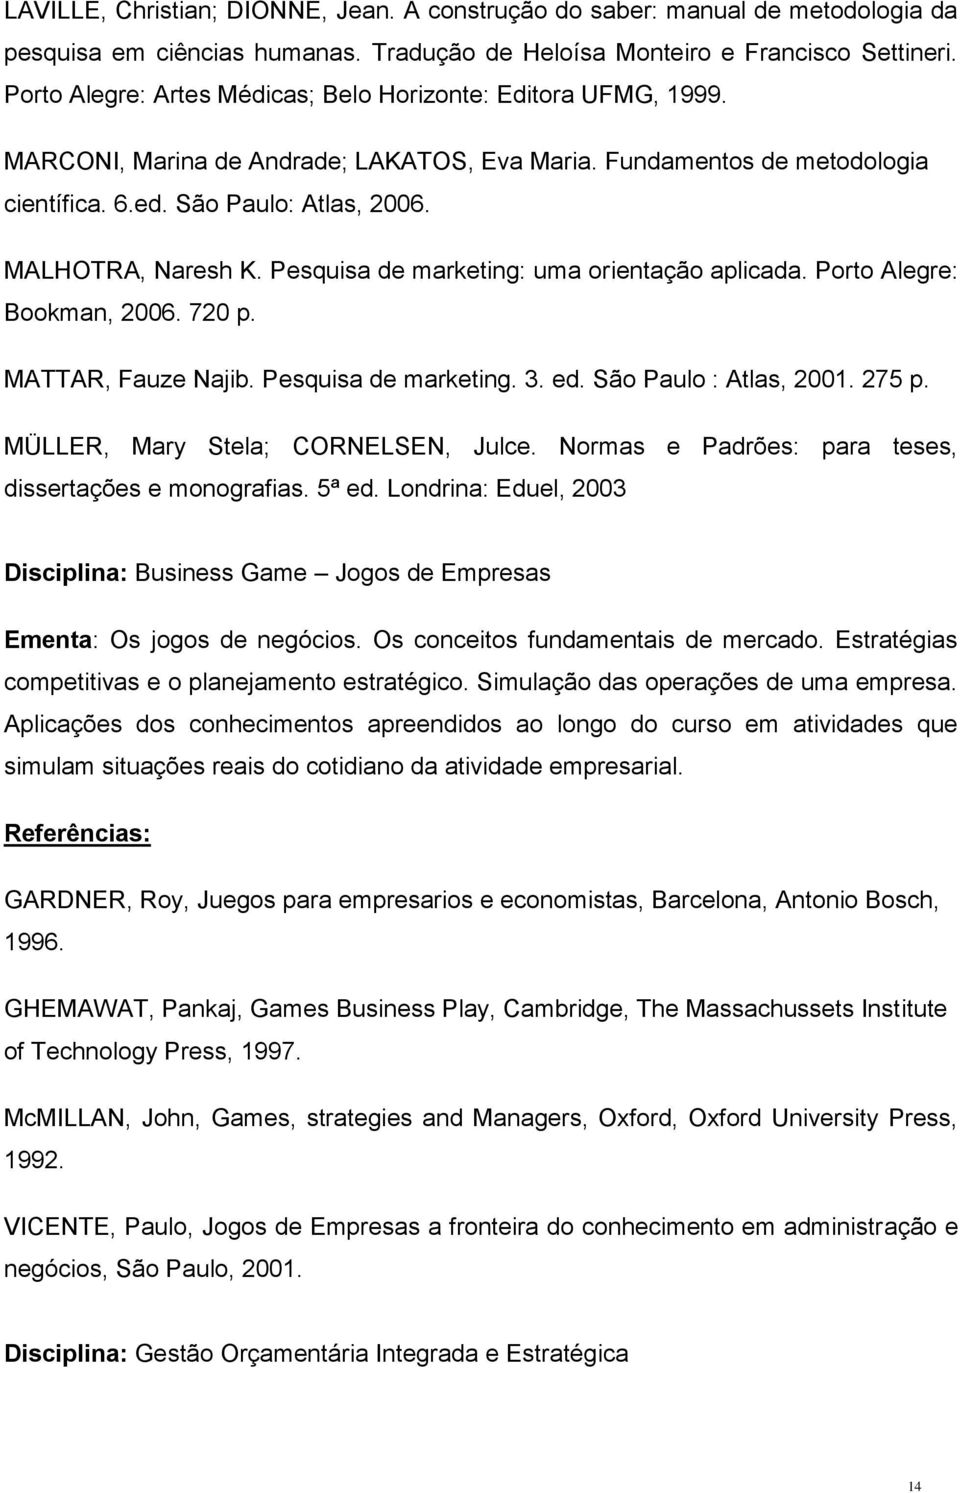 MALHOTRA, Naresh K. Pesquisa de marketing: uma orientação aplicada. Porto Alegre: Bookman, 2006. 720 p. MATTAR, Fauze Najib. Pesquisa de marketing. 3. ed. São Paulo : Atlas, 2001. 275 p.